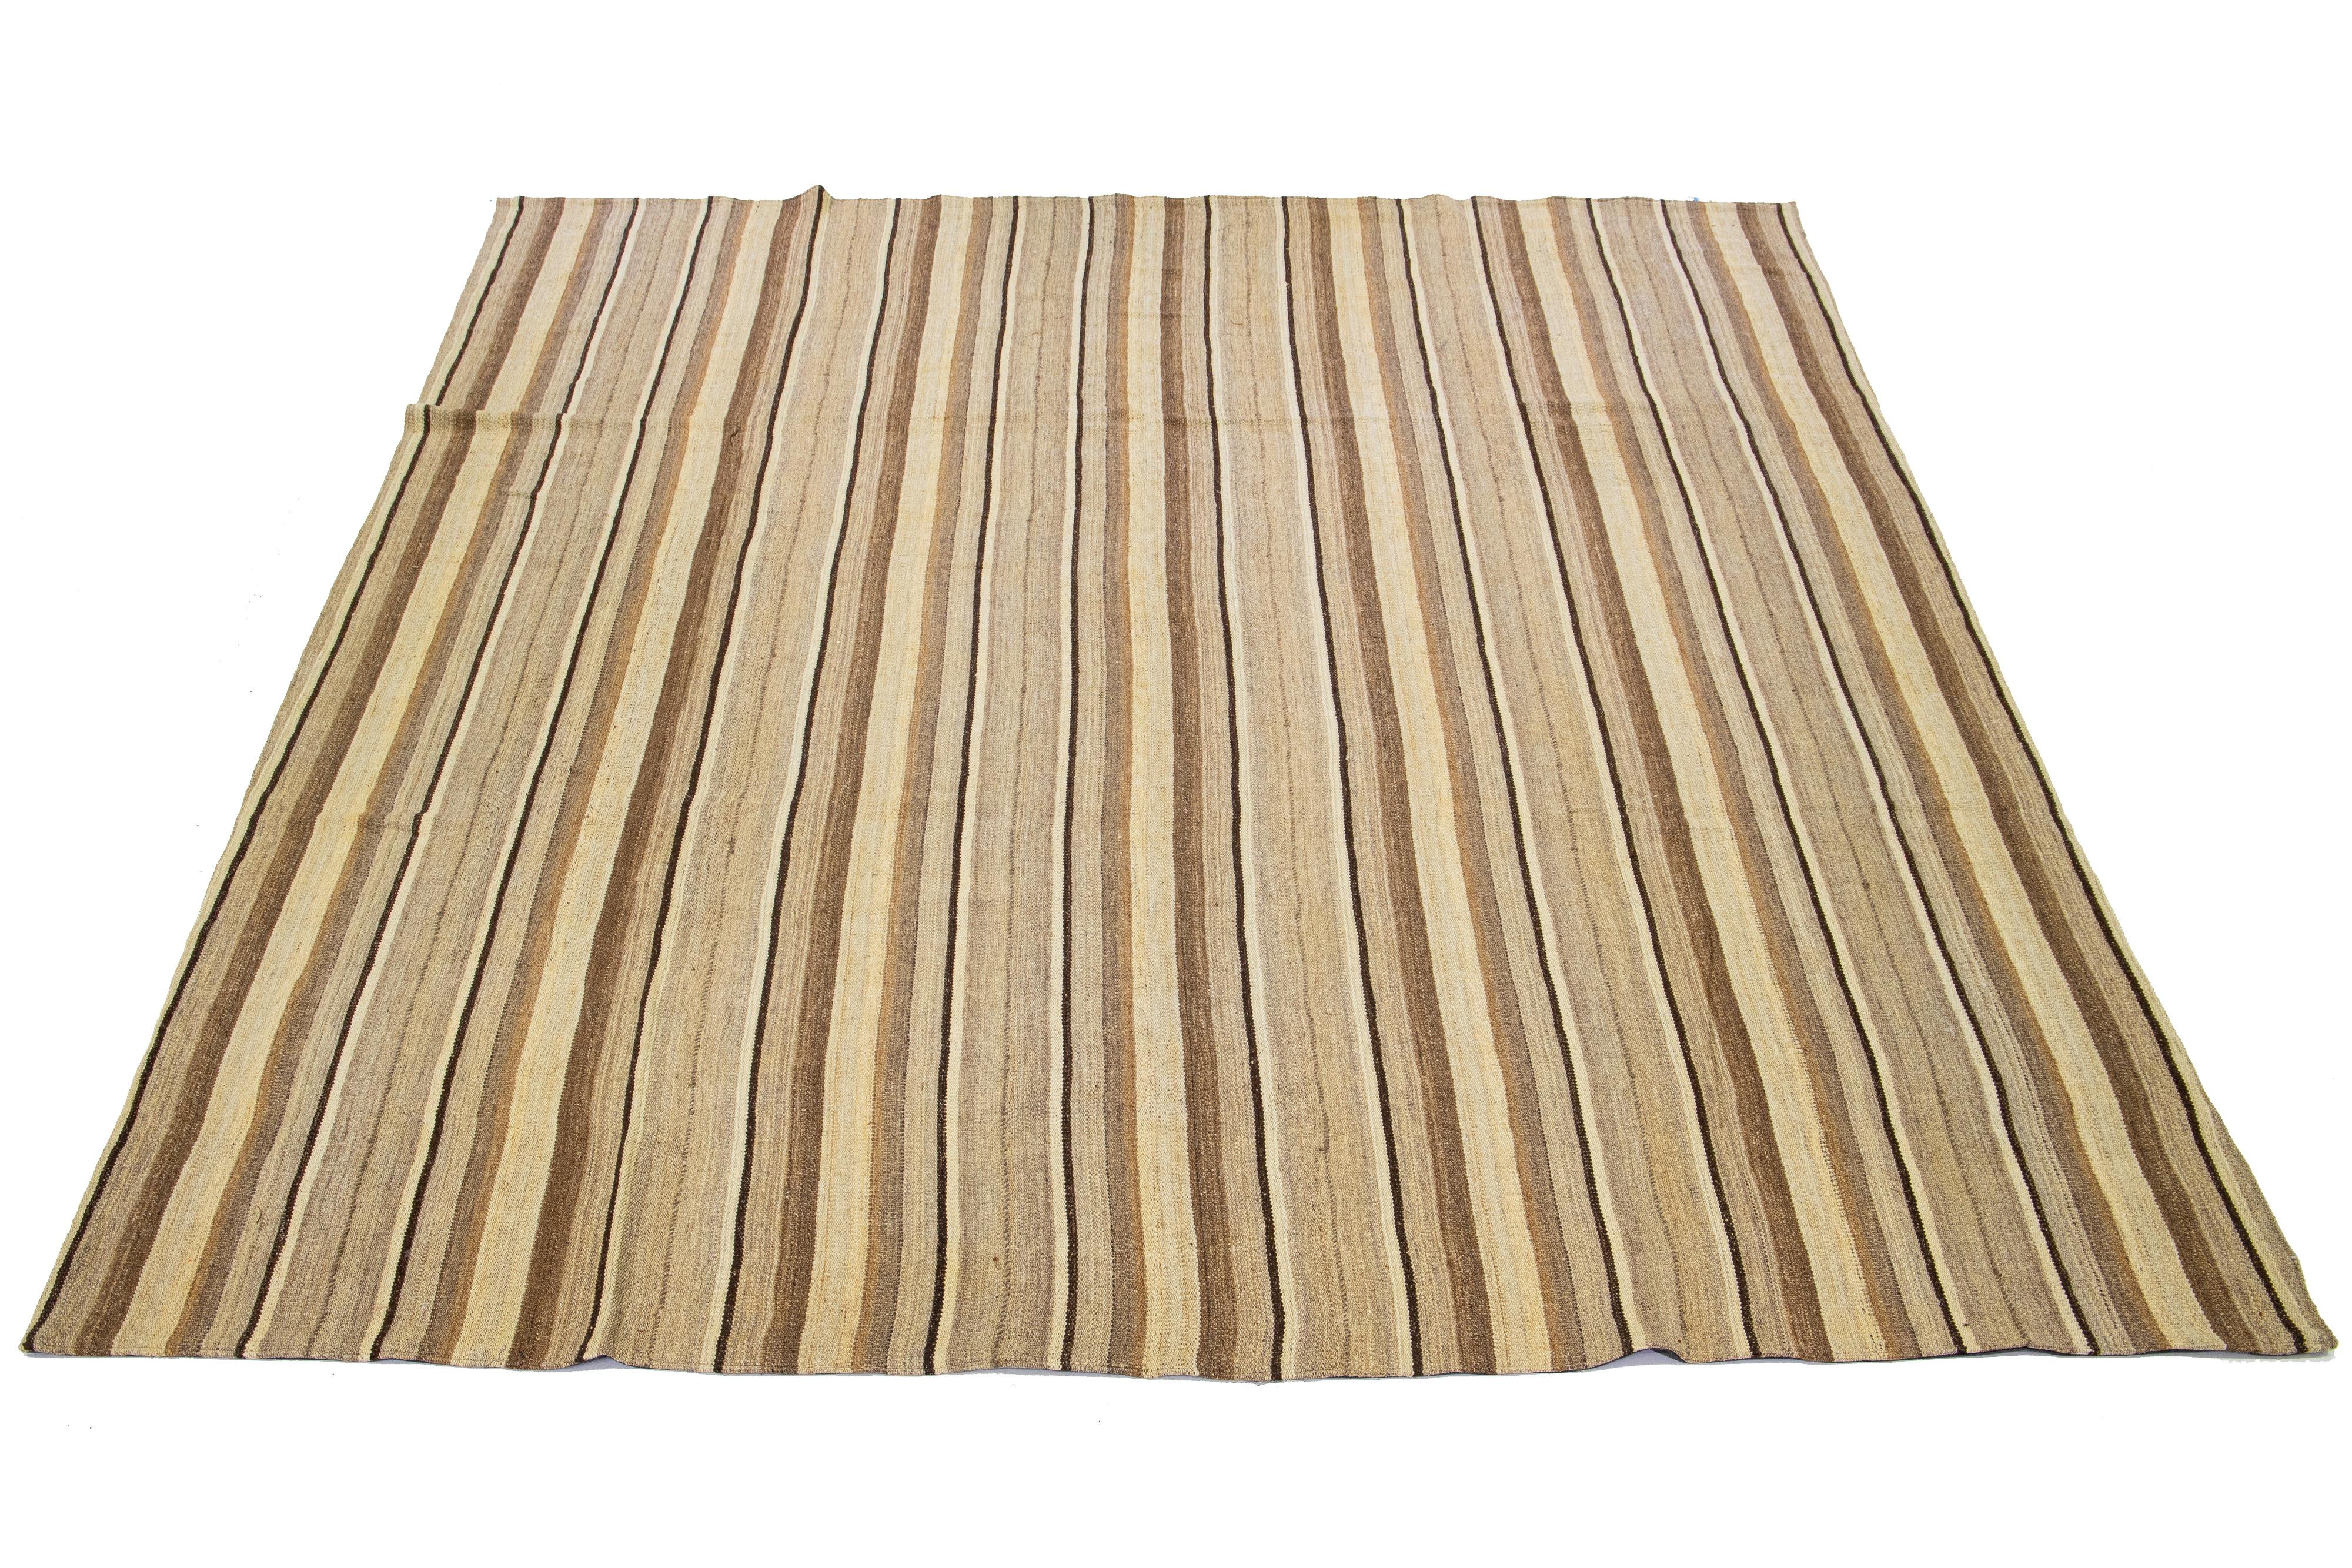 Ce tapis indien présente un tissage plat contemporain de type Rug & Kilim, réalisé en laine. Le tapis présente un élégant motif rayé dans les tons beige et marron.

Ce tapis mesure 10'9